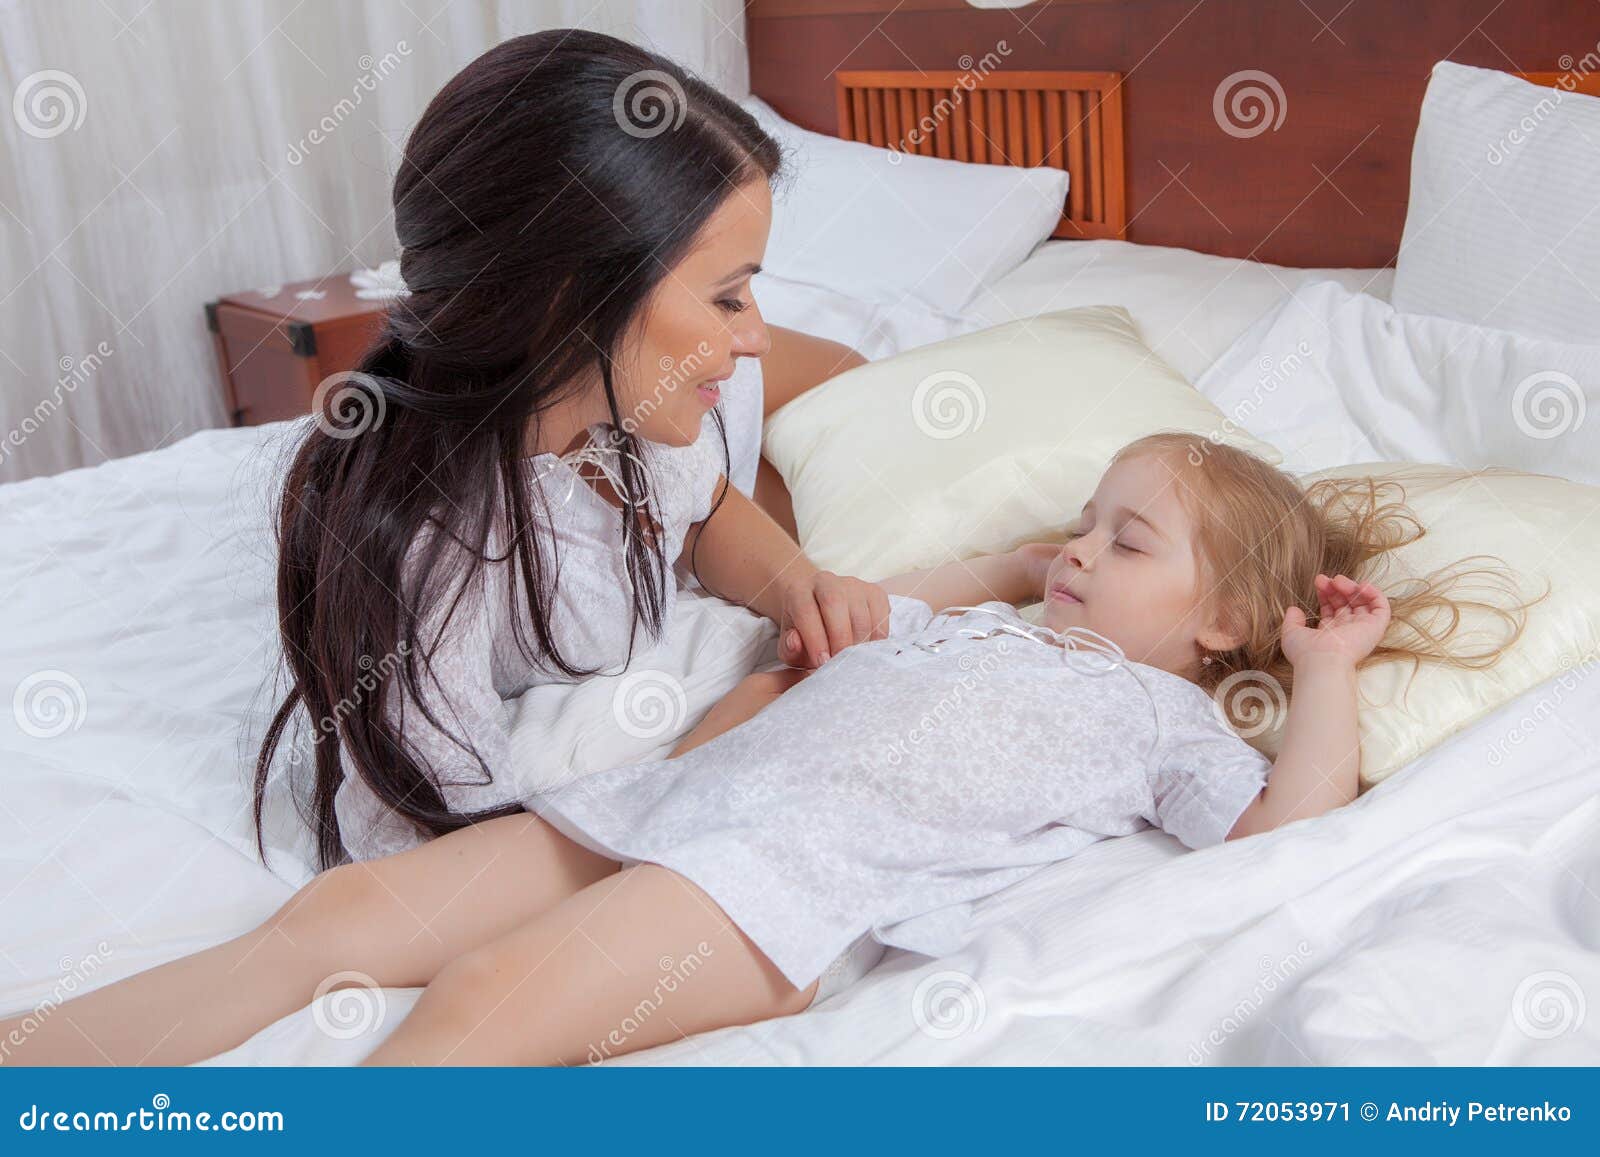 С ее мамой в постели. Мама с дочкой на кровати. Мамас дочкой накрлвати. Фотосессия с дочкой на кровати. Девочка и мама в постели -.